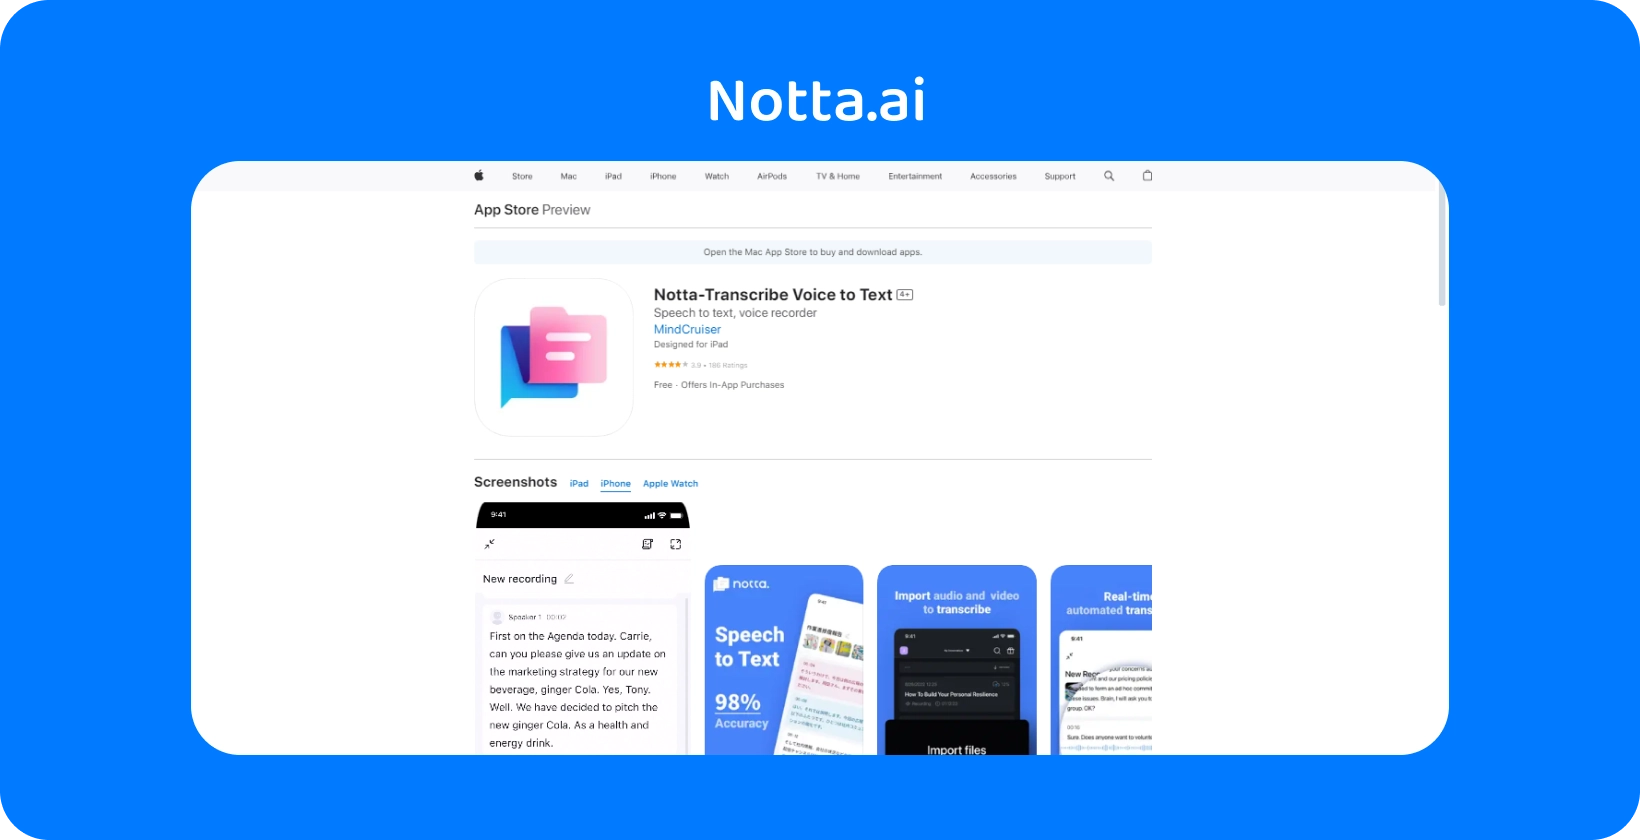 Podgląd Nota.ai App Store z nowymi funkcjami konwersji głosu na tekst z dokładnością AI.